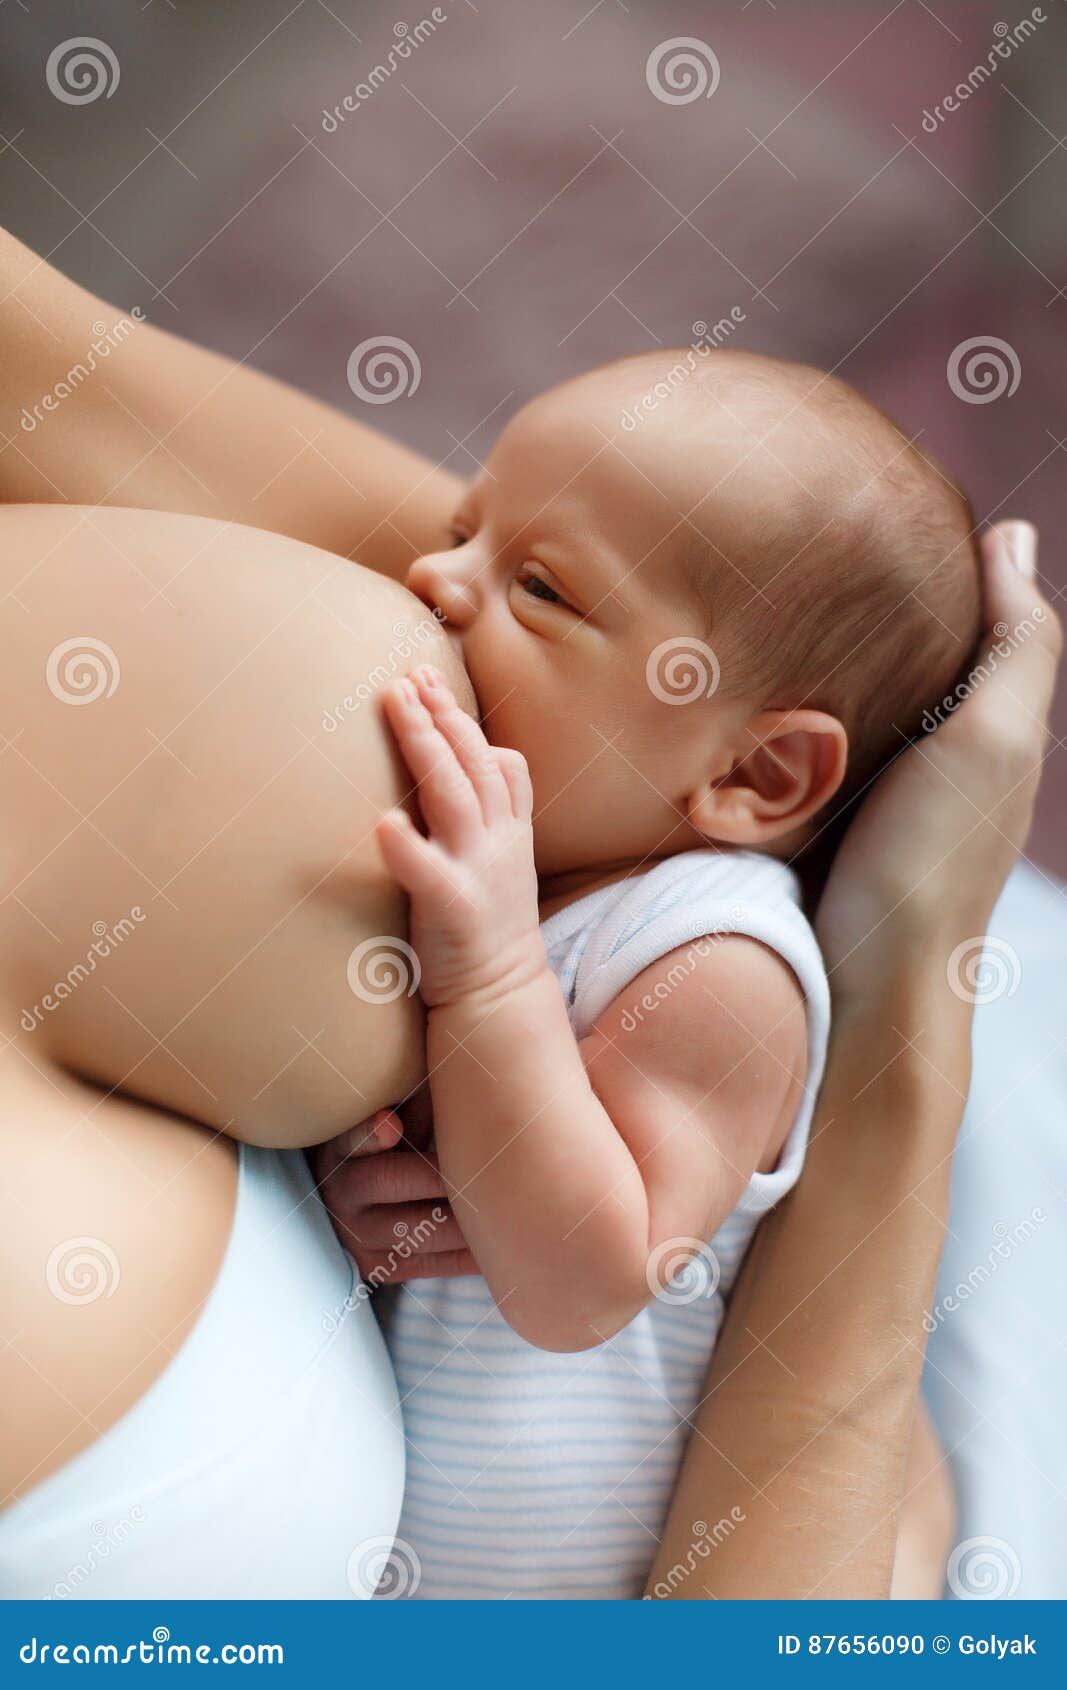 у малыша потеет голова когда он сосет грудь фото 118